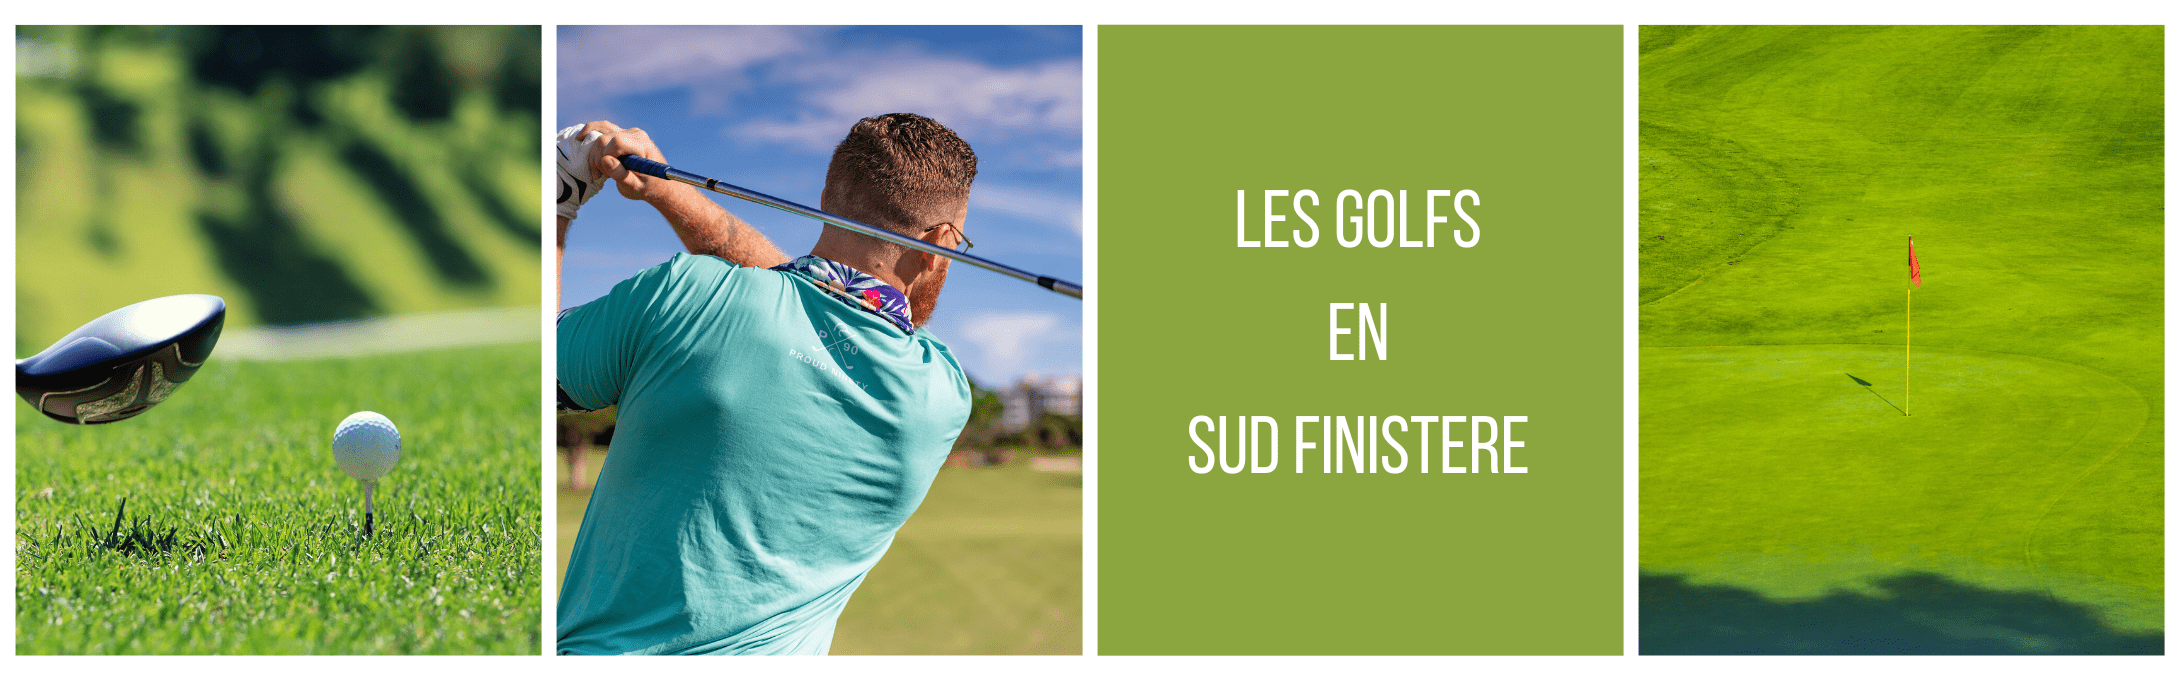 Les terrains de golf en Sud Finistère